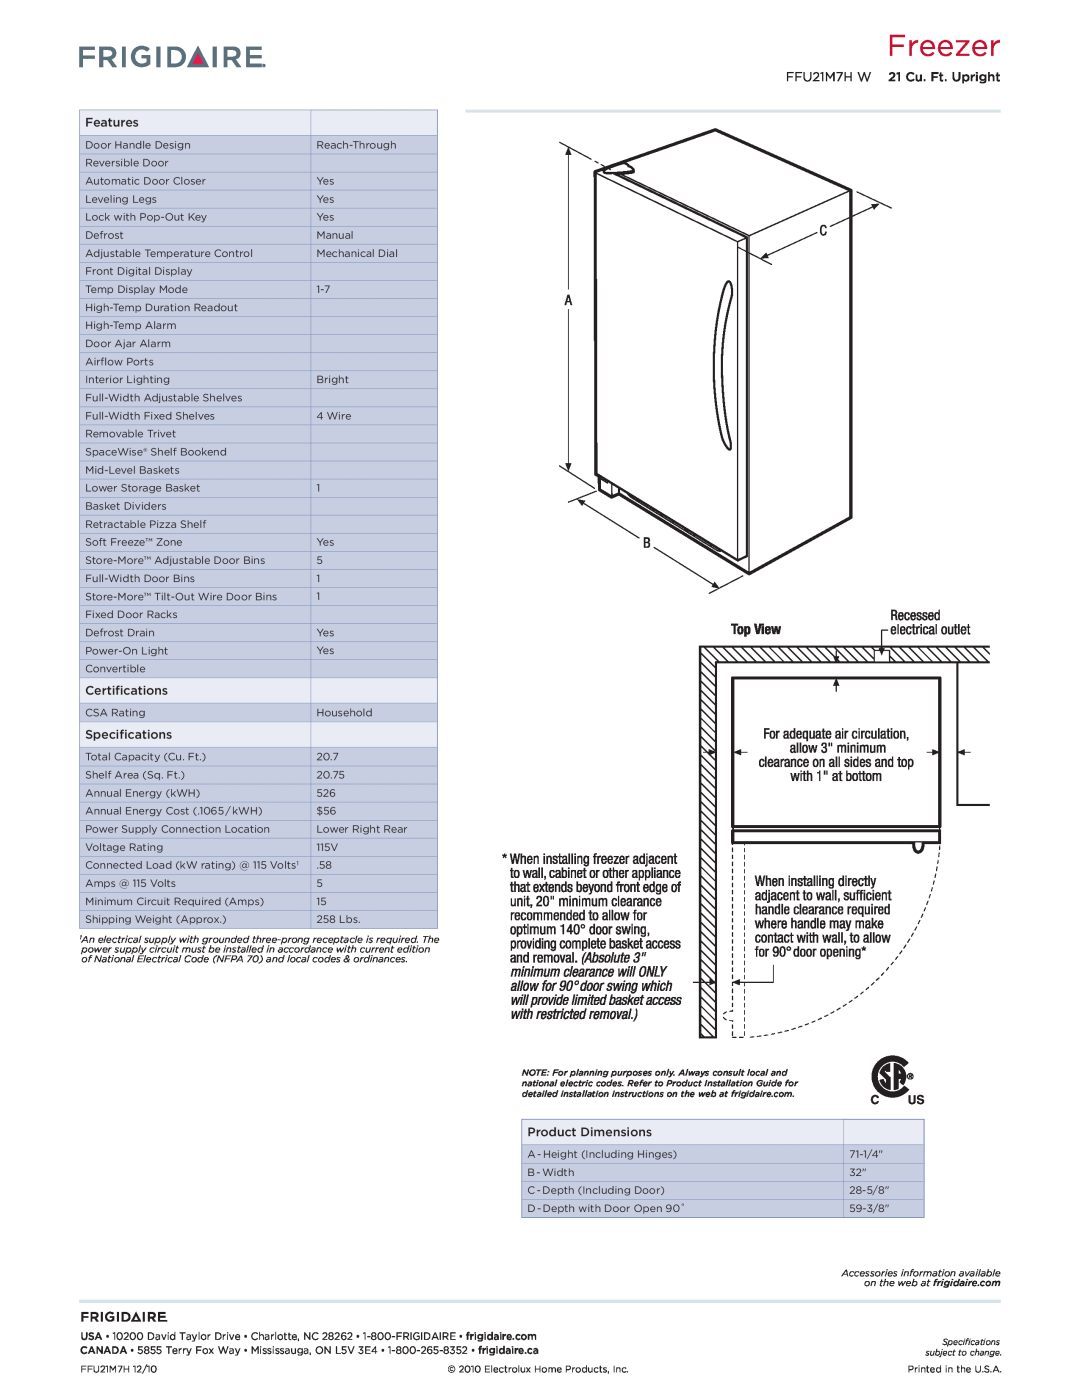 Frigidaire FFU21M7HW dimensions Freezer, FFU21M7H W 21 Cu. Ft. Upright 